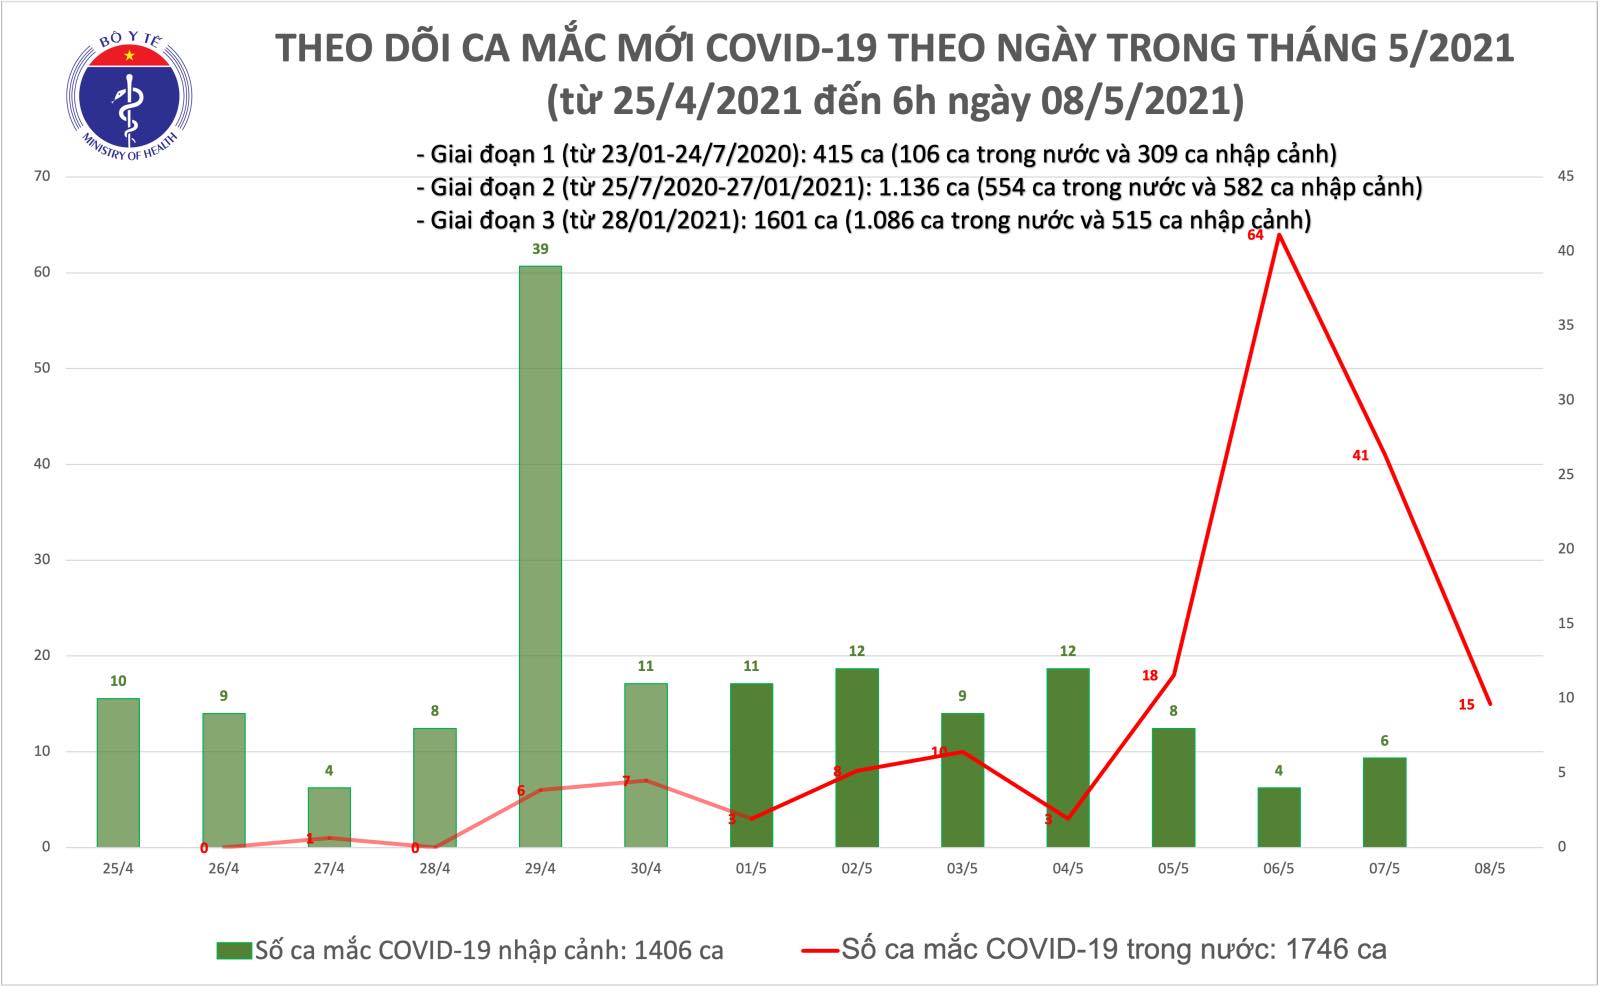 Sáng 8/5 có 15 ca Covid-19 lây nhiễm trong nước tại Bắc Ninh và Hà Nội - Ảnh 2.